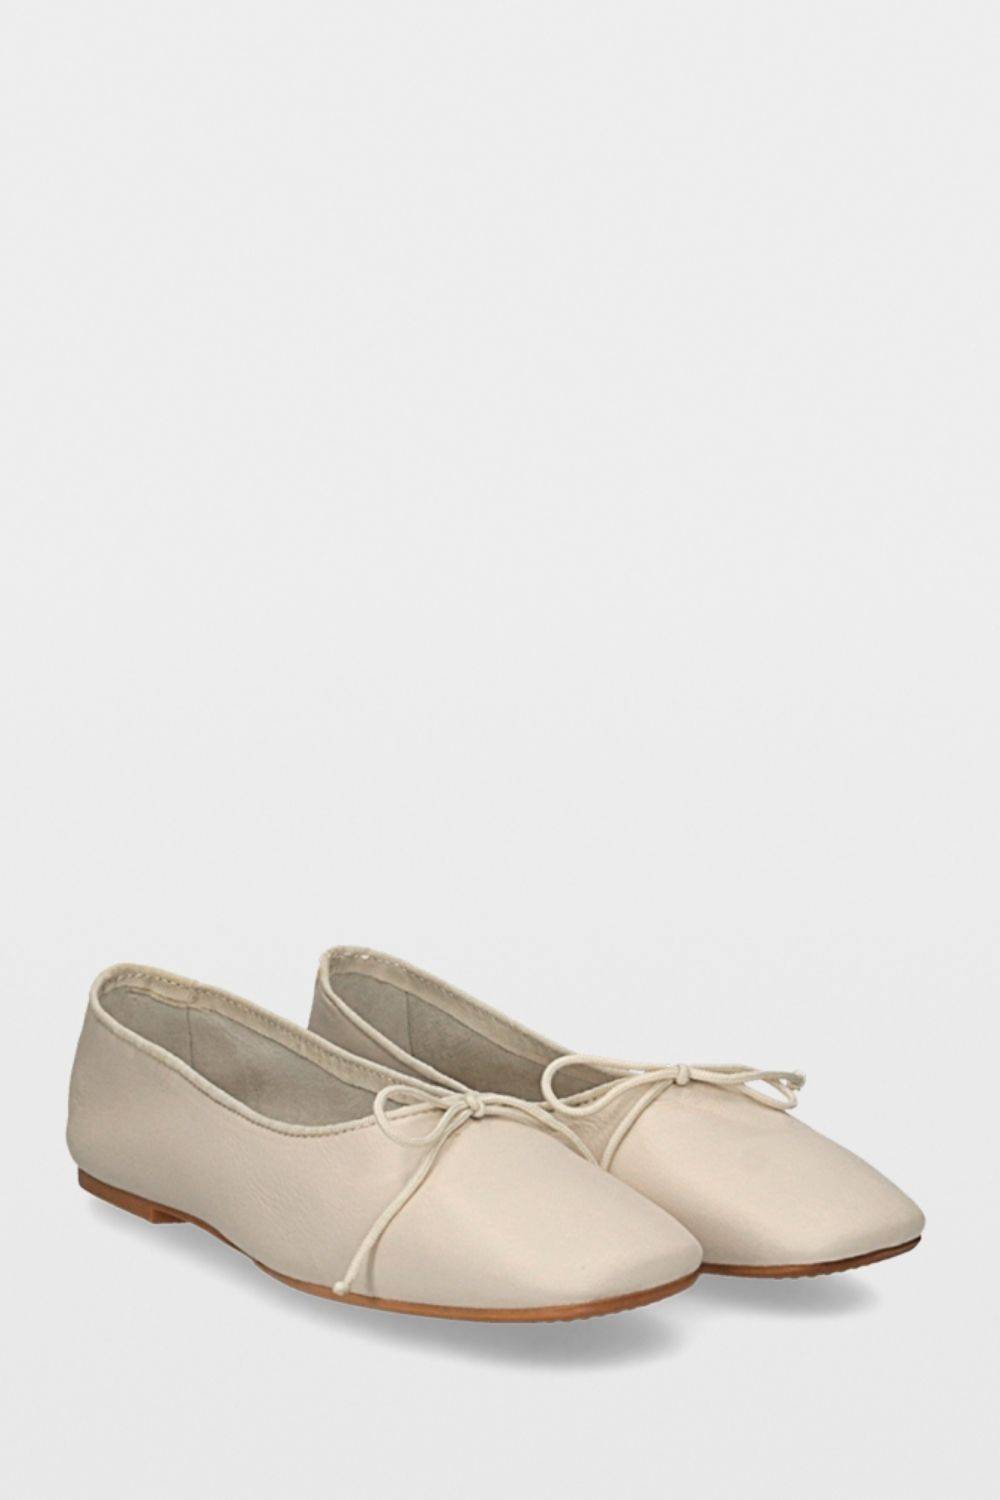 Bruglia Bailerinas crema-blanco puro look casual Zapatos Bailarinas 